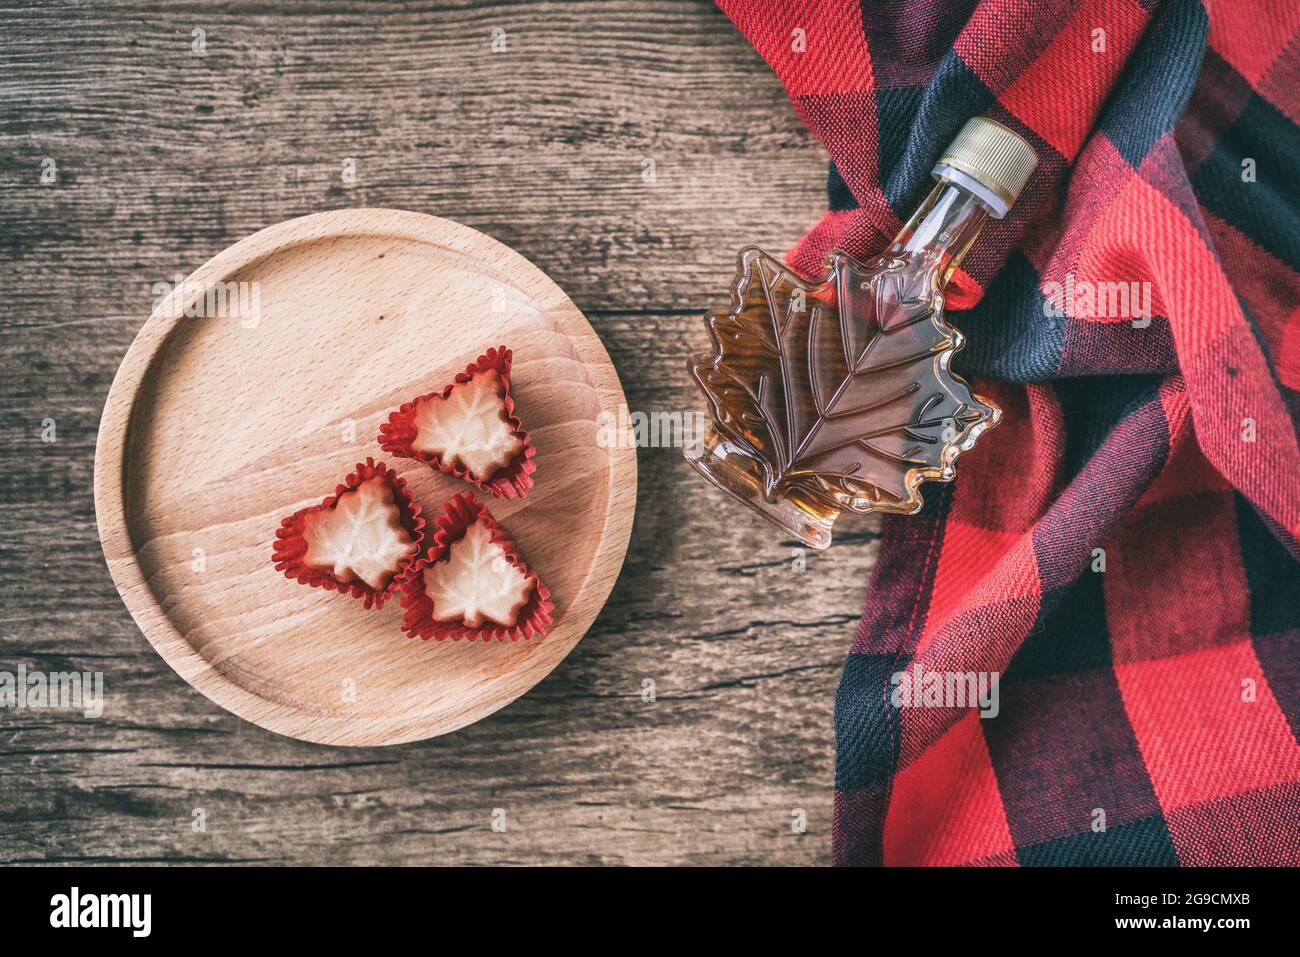 Ahornsirup Flasche aus Quebec mit Geschenk Süßigkeiten weichen Zucker Draufsicht auf rustikalem Holzhintergrund für Touristen Souvenir. Kanada Sorte EIN Bernstein süß Stockfoto